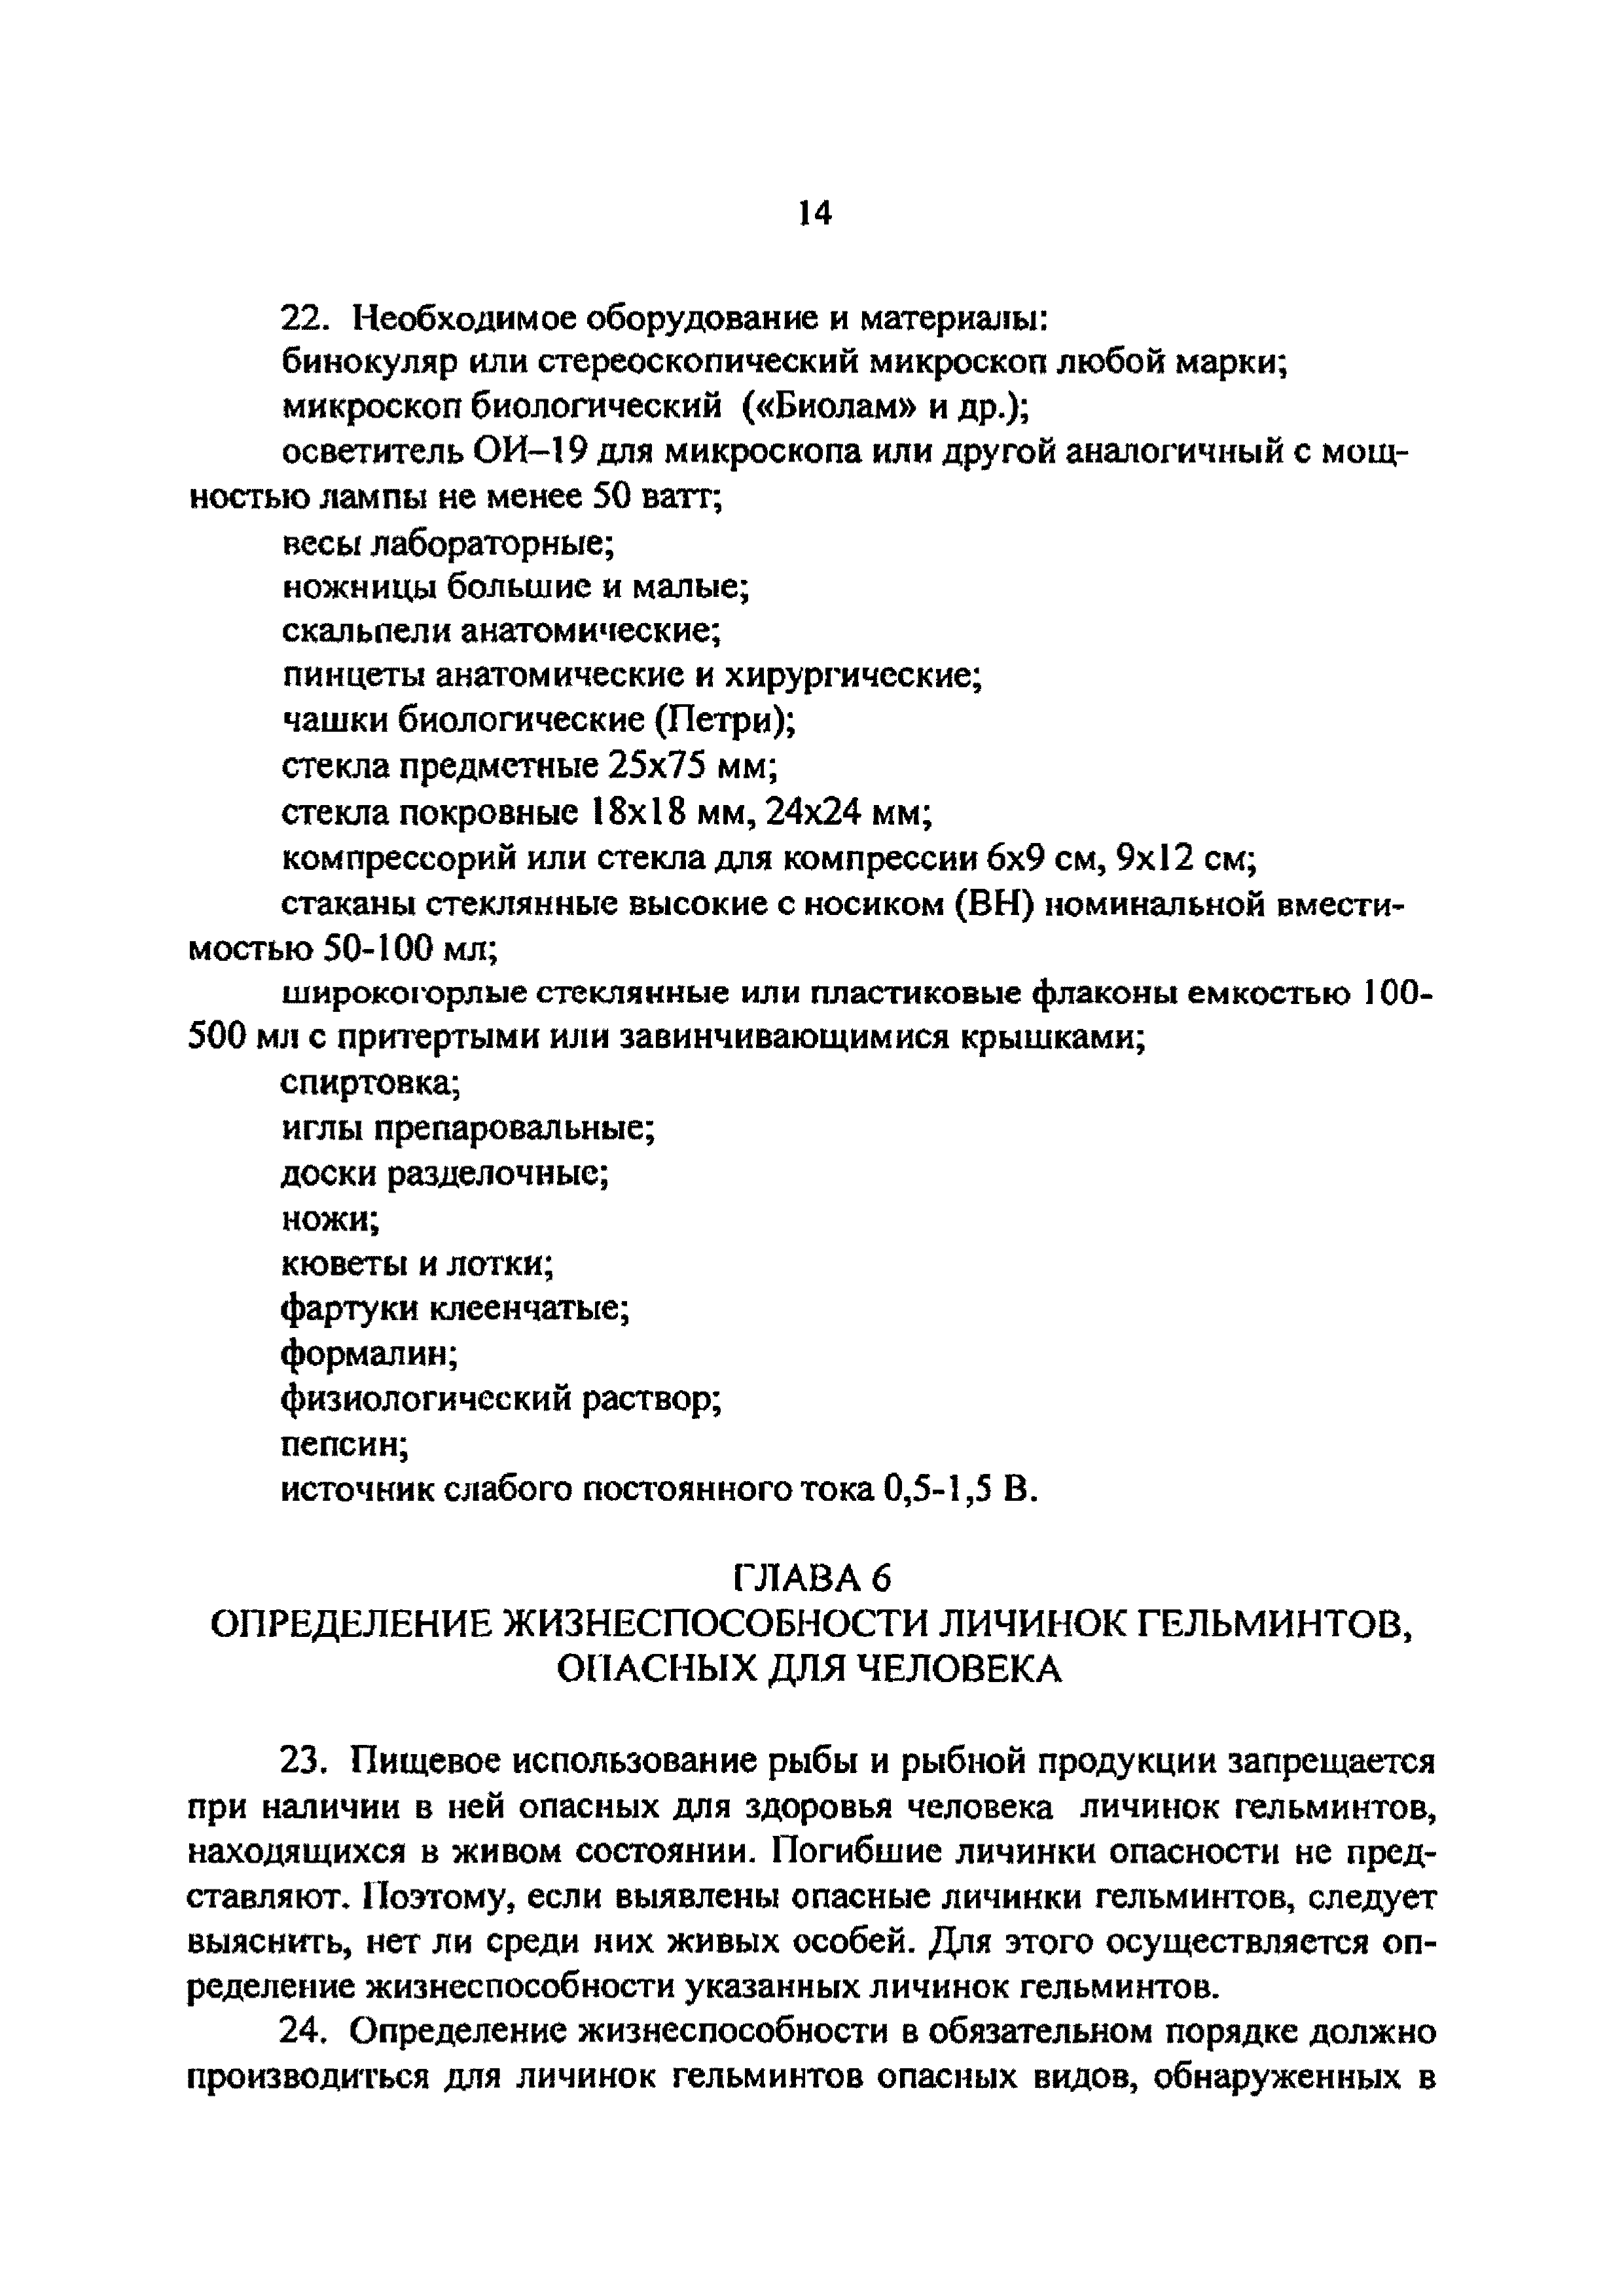 Инструкция 4.2.10-21-25-2006